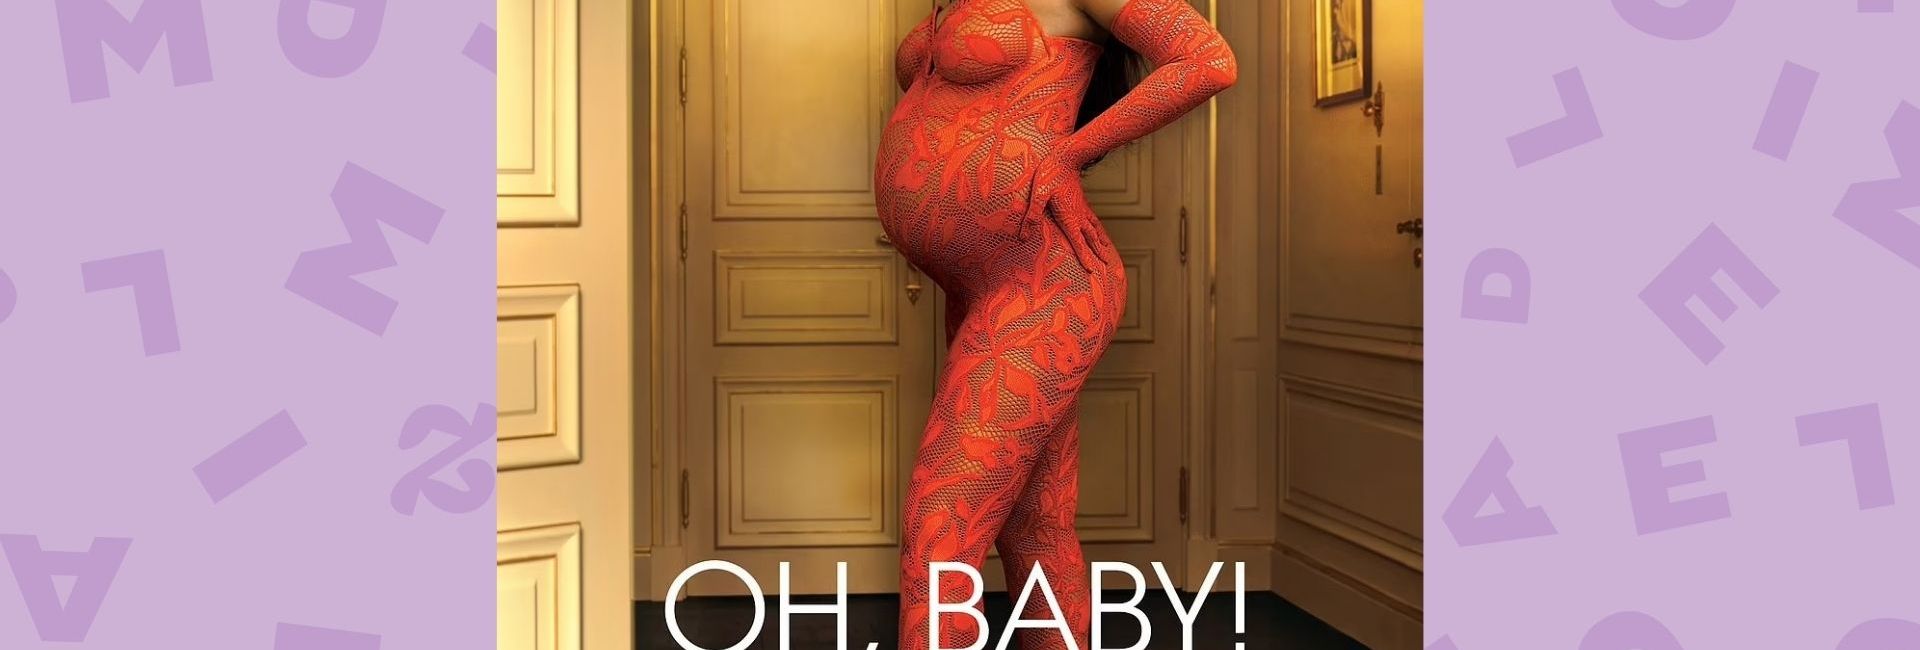 Rihanna n’avait pas prévu sa grossesse, ne veut pas connaître le genre du bébé, et autres révélations